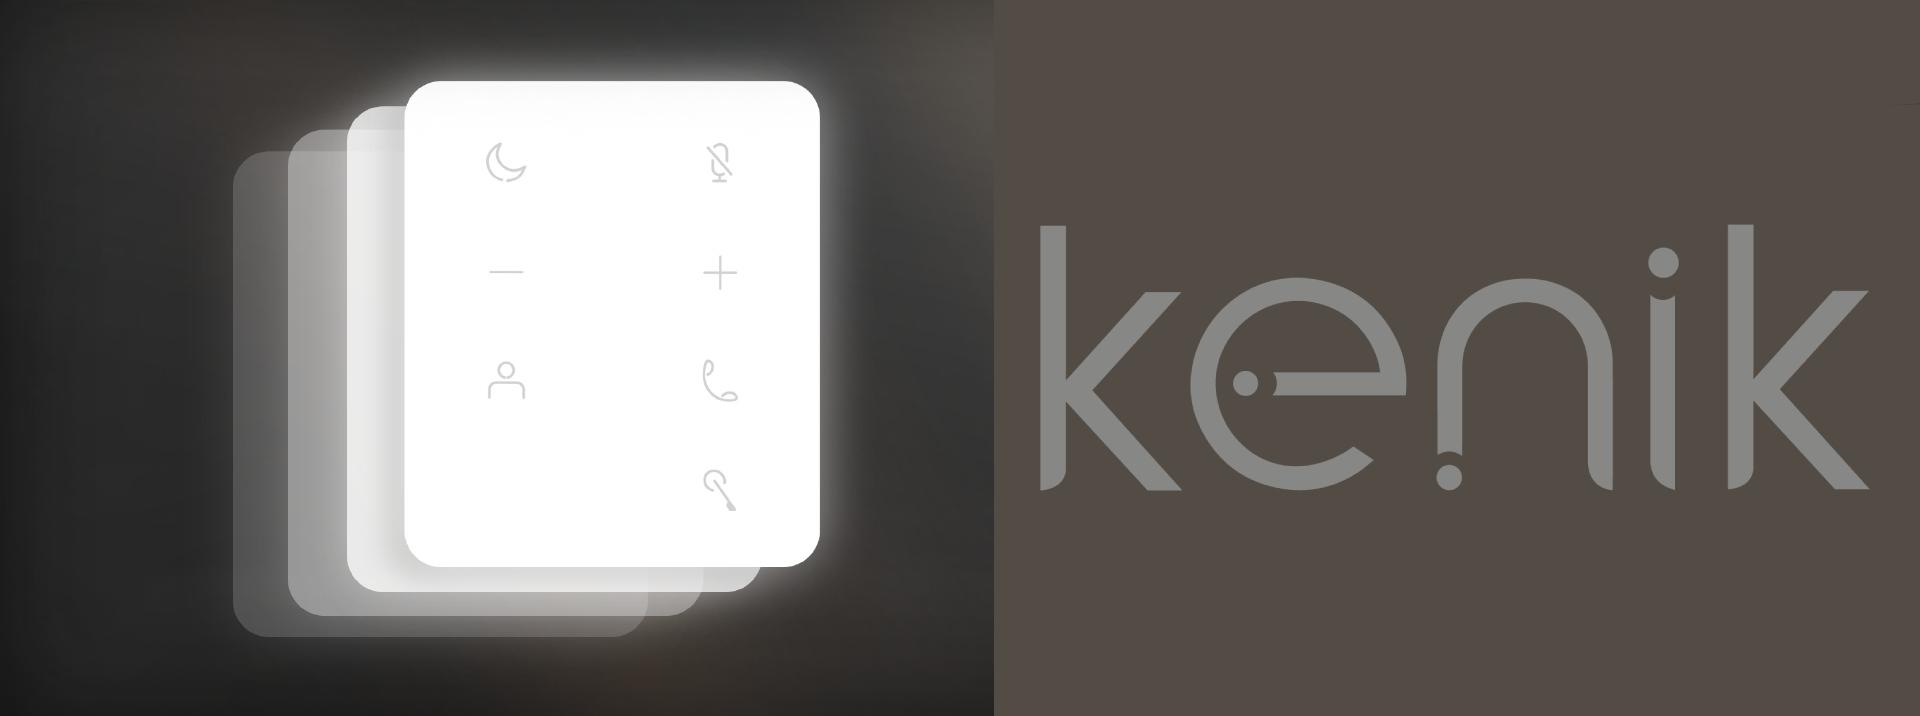 Unifon bezsłuchawkowy IP KENIK KG-U11 - dotykowe klawisze dla szybkiego i łatwego dostępu do wszystkich funkcji kasety